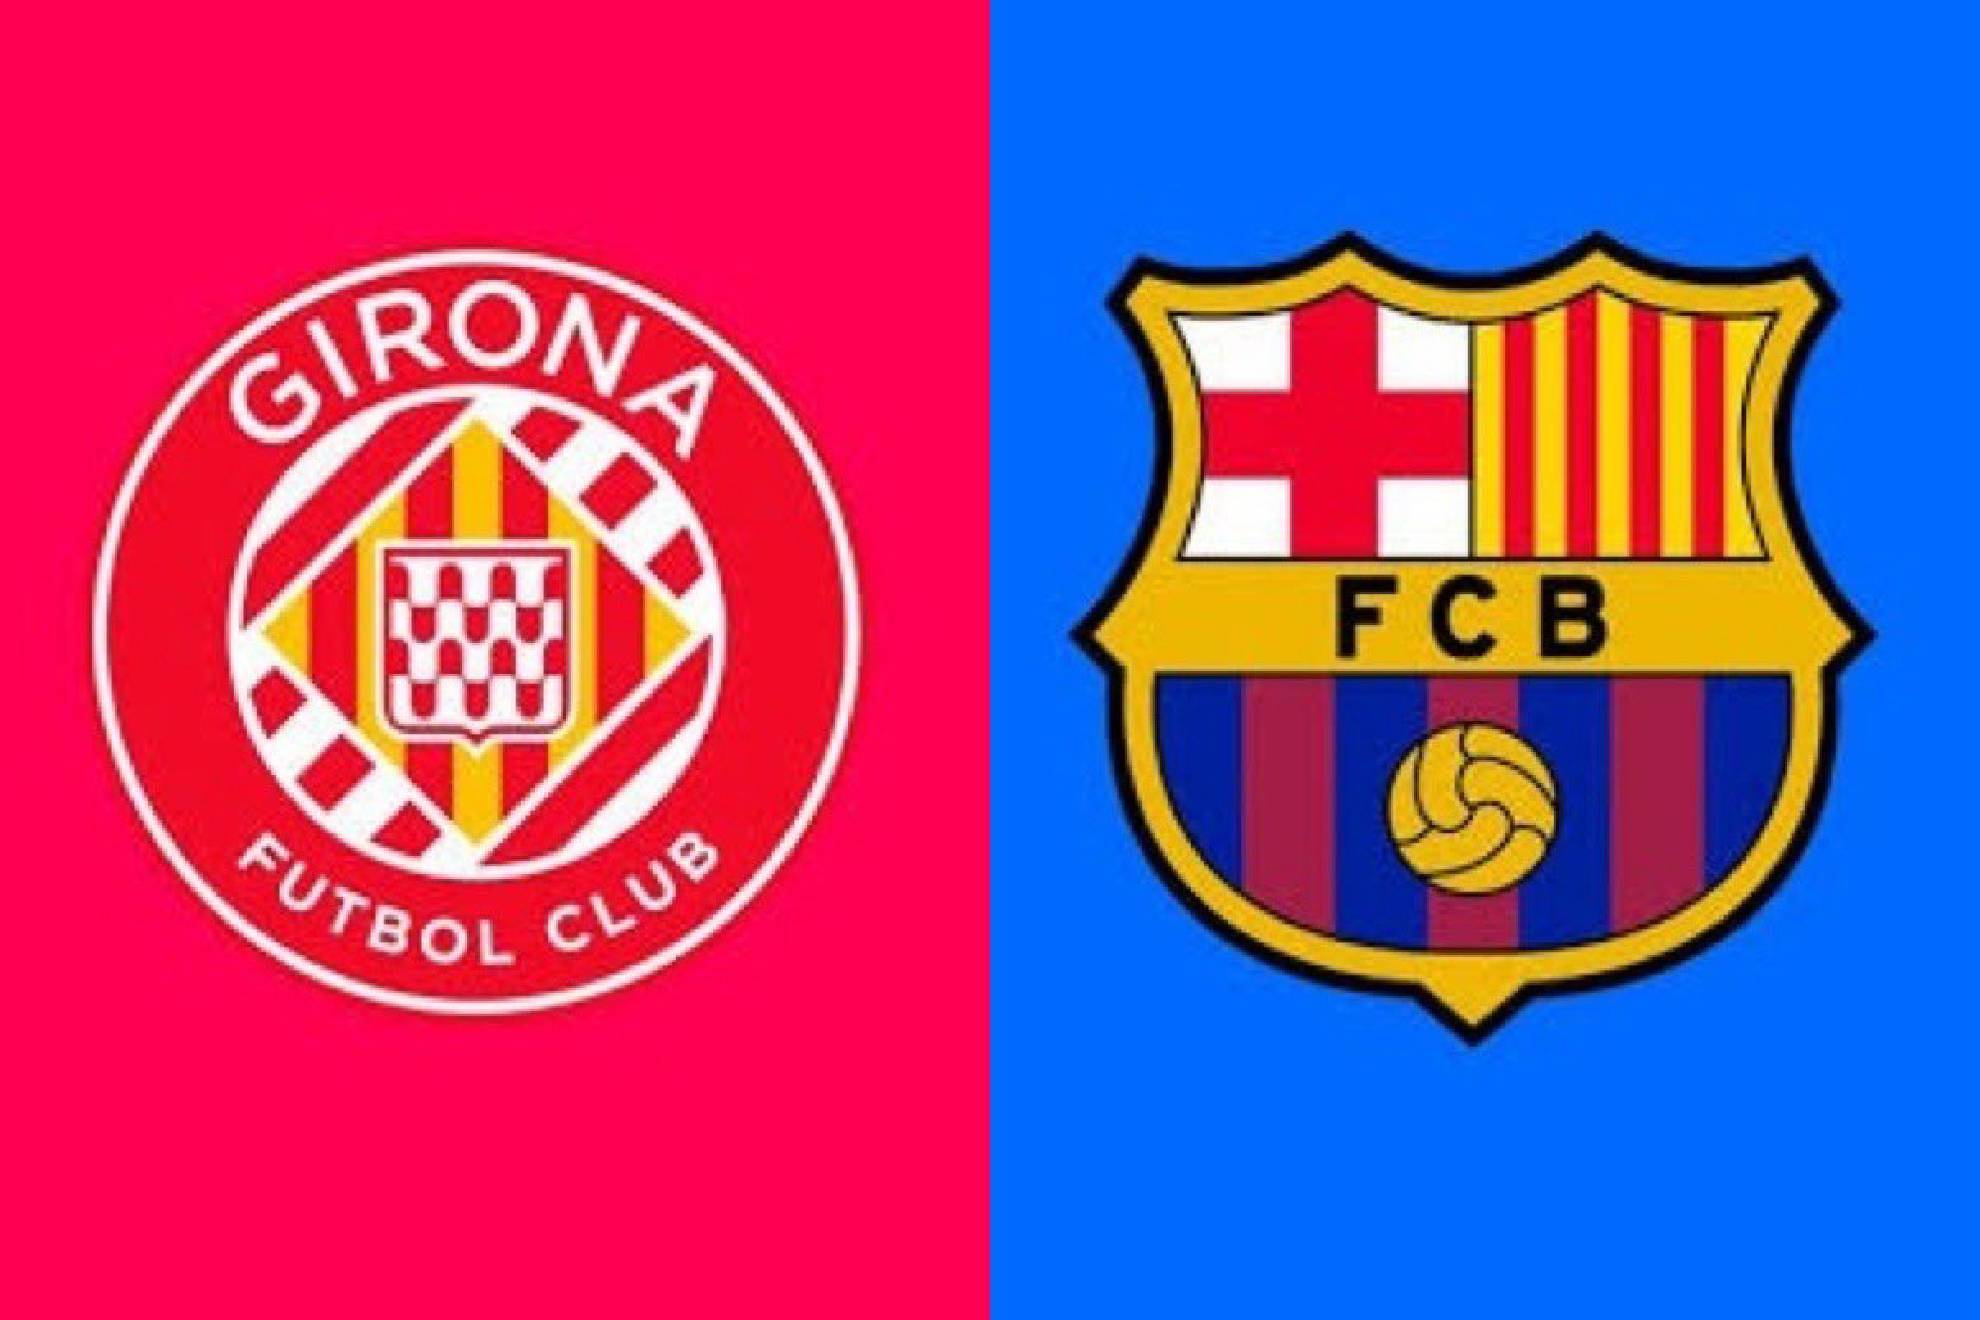 Barcelona visita al Girona en uno de los partidos ms importantes de la temporada en LaLiga.